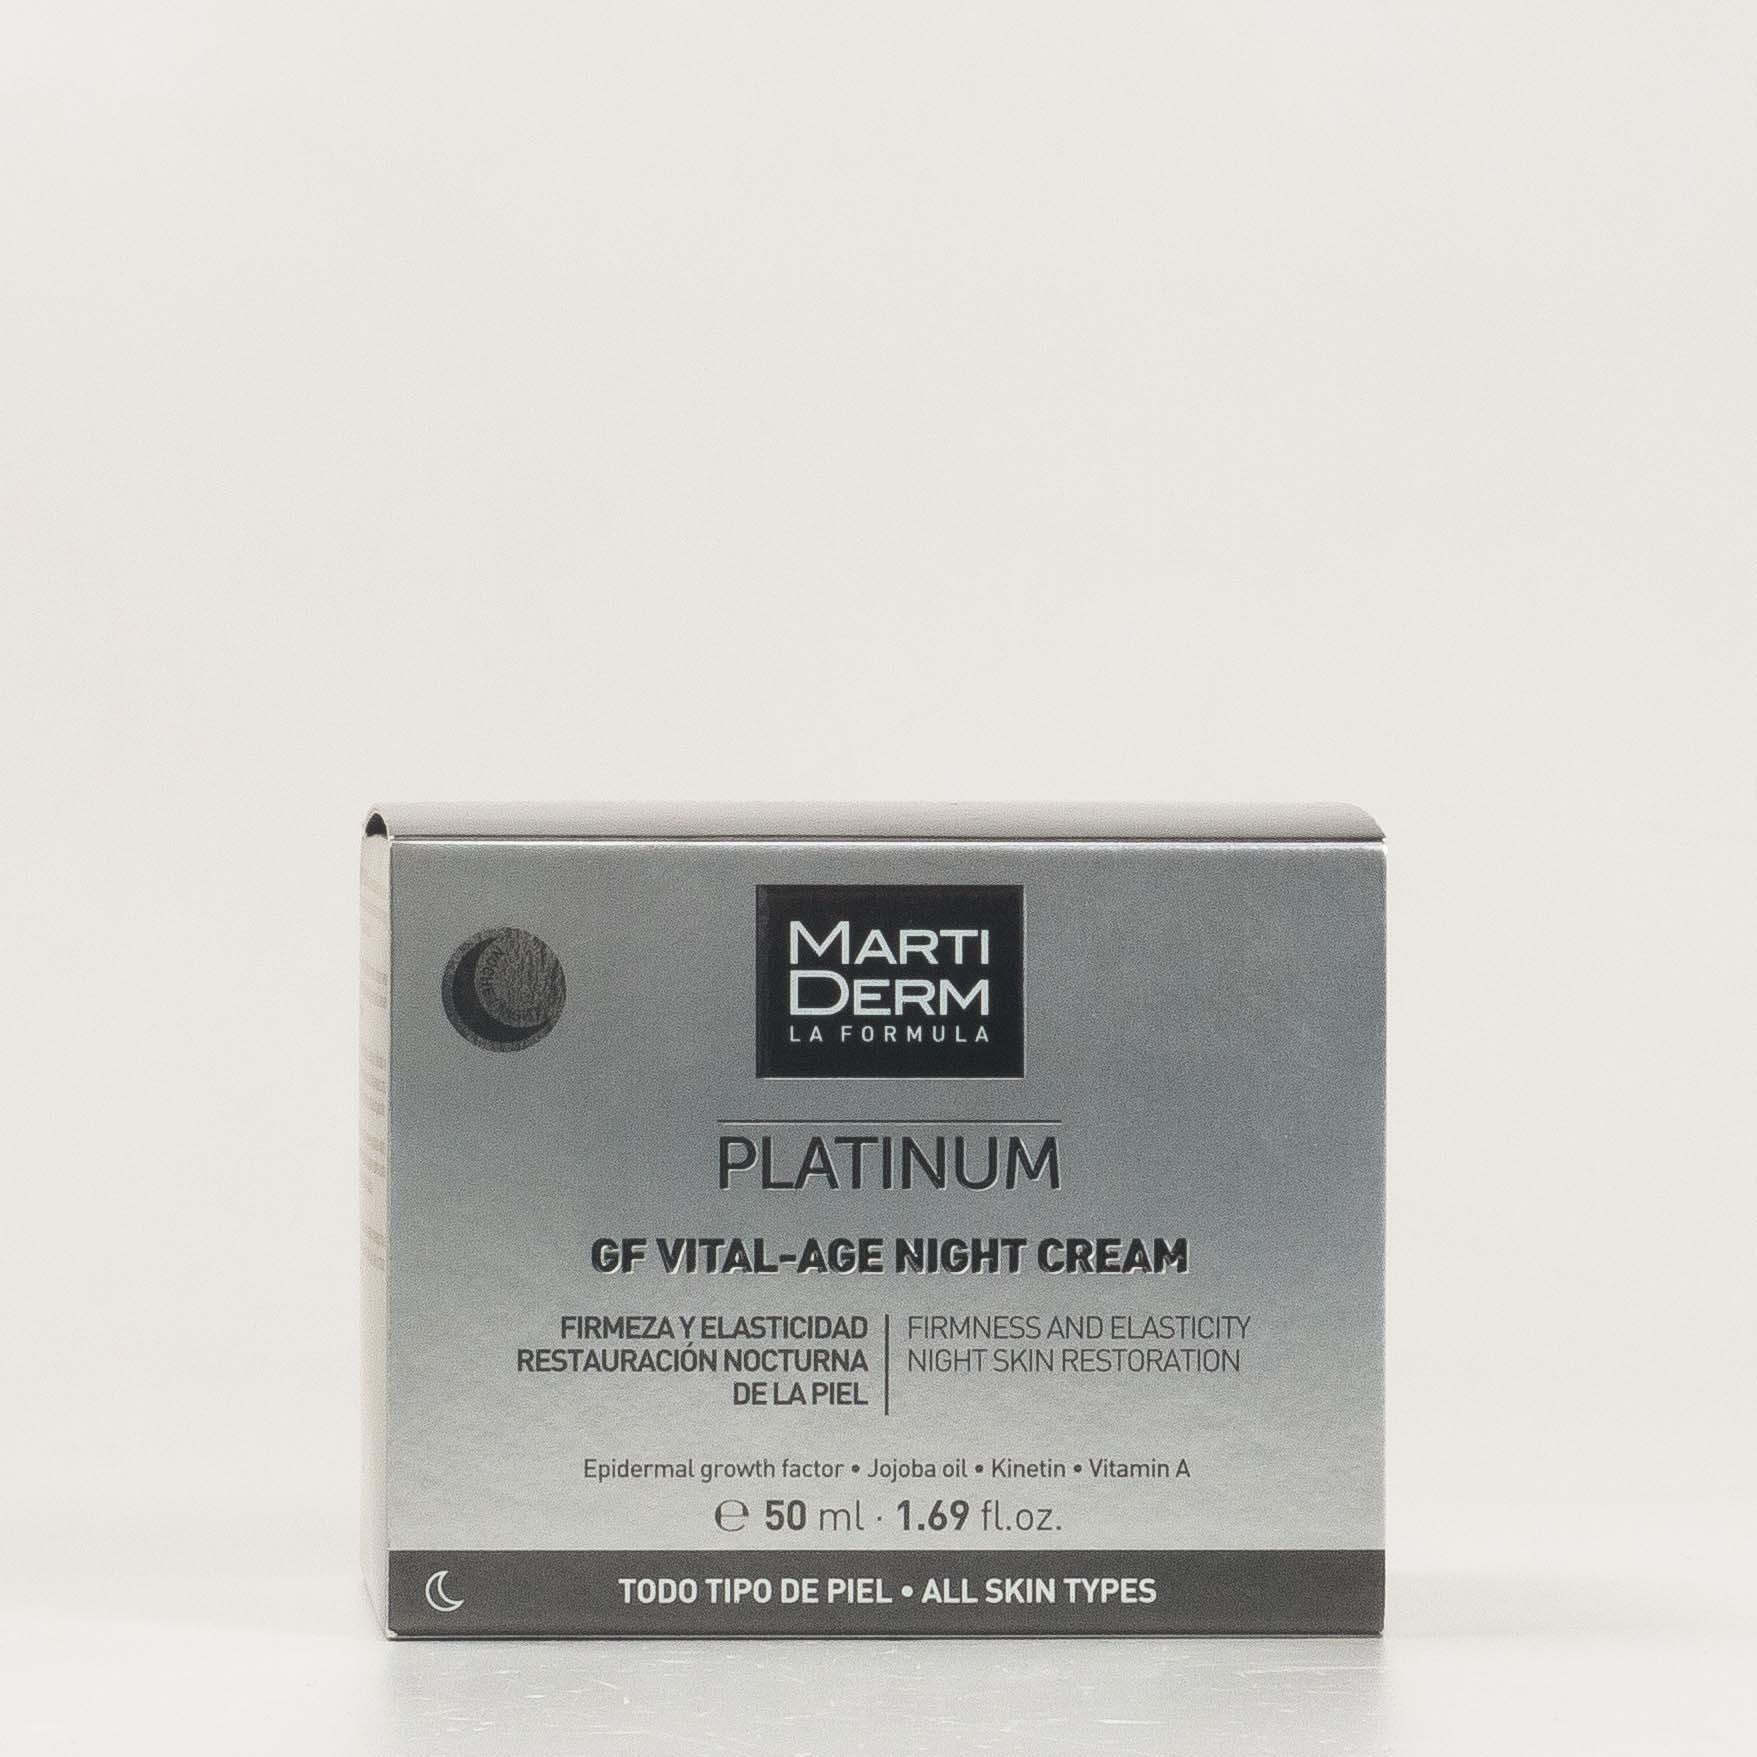 Martiderm Platinum GF Vital-Age Creme de Noite, 50ml.